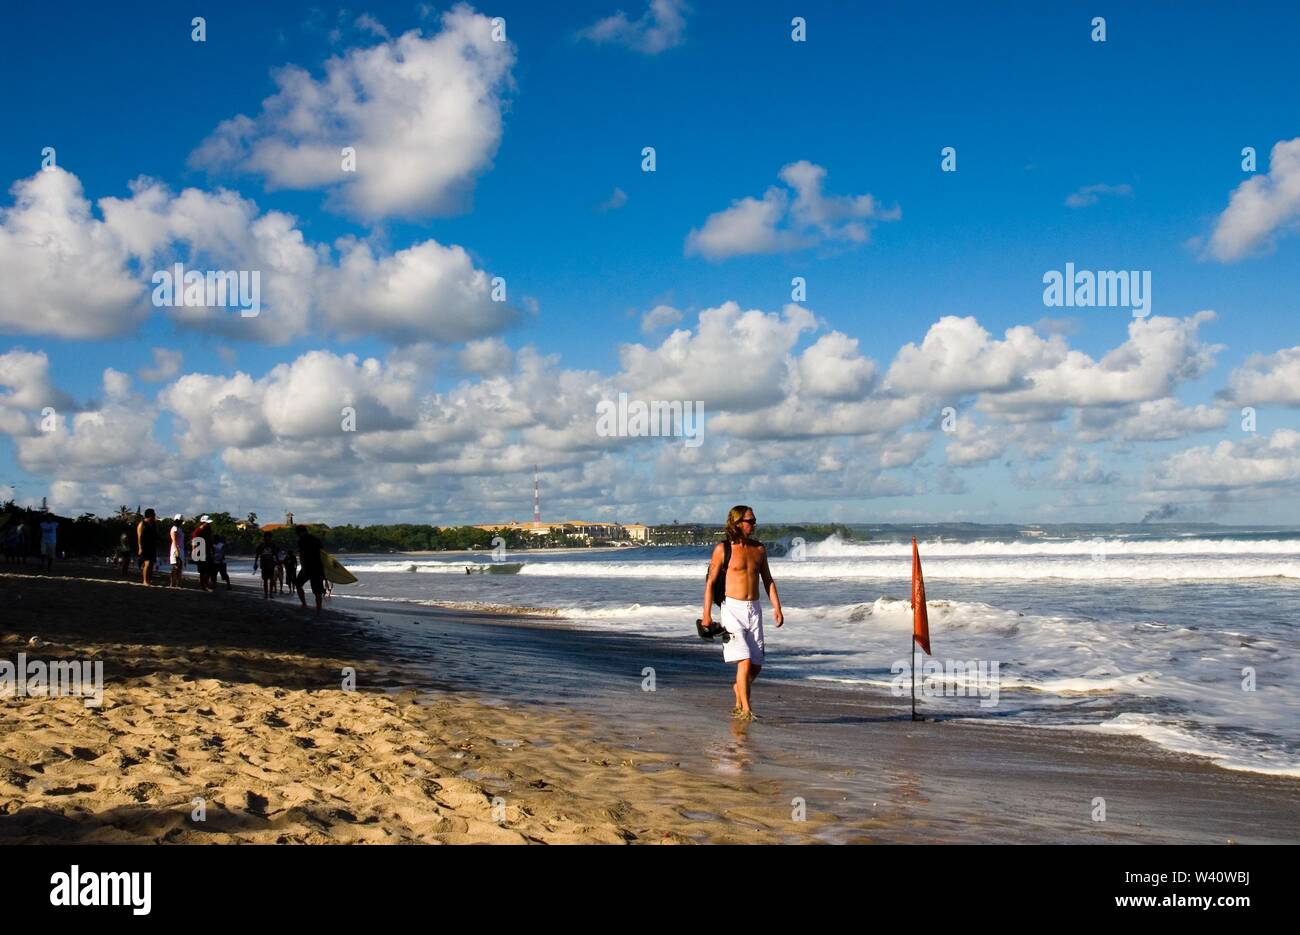 La spiaggia di Kuta Beach, Bali, Indonesia - Giugno 2019 : la gente a piedi su una spiaggia con un contrassegno di sicurezza. Foto Stock